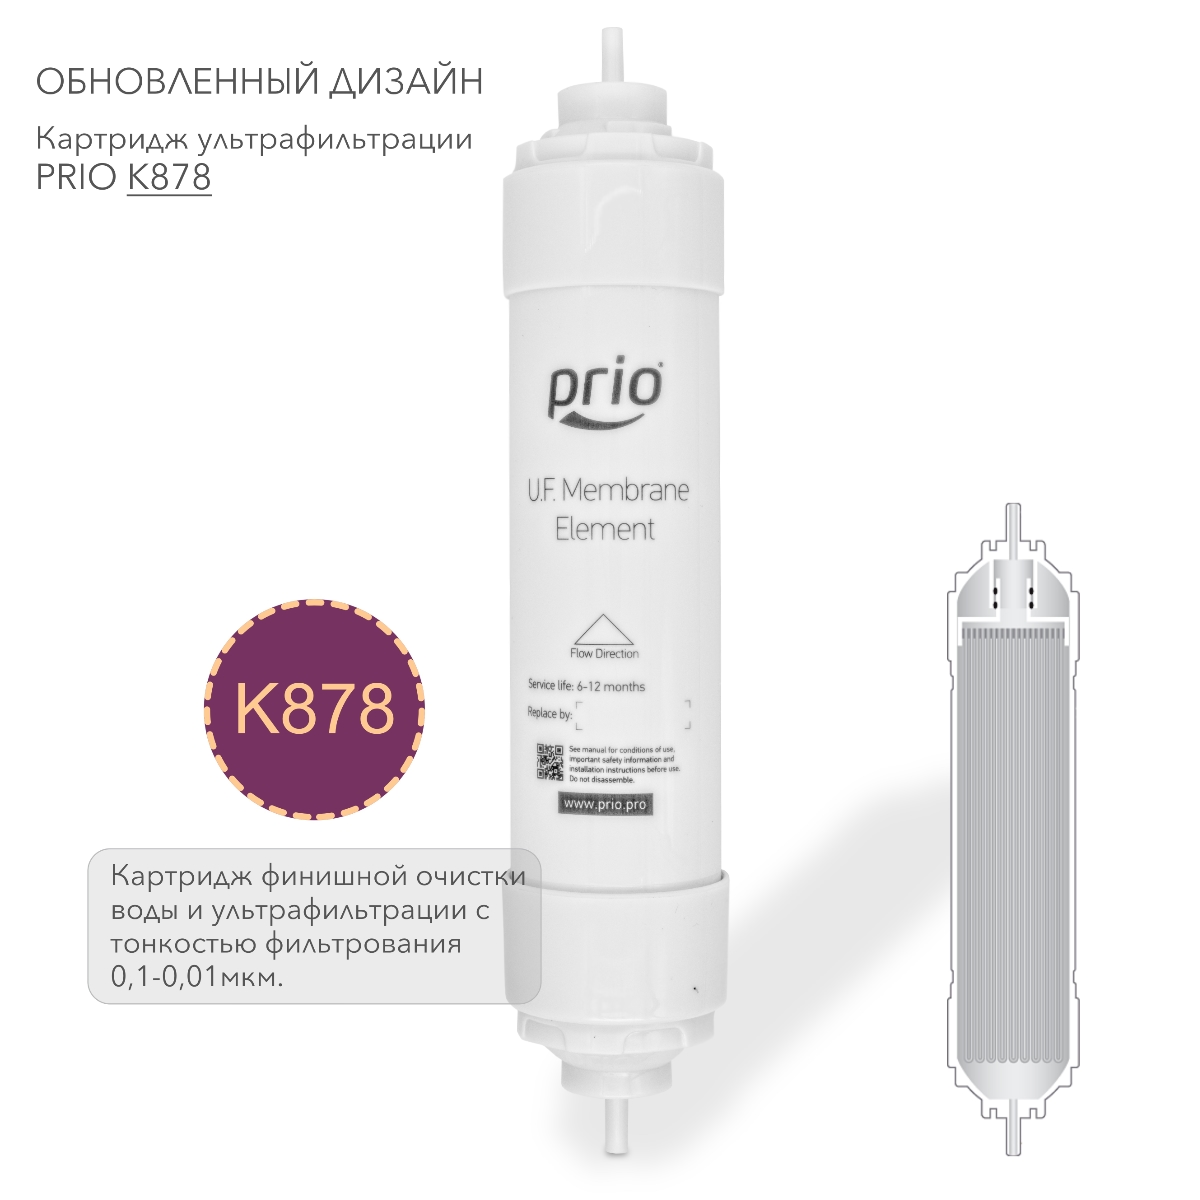 Prio Новая Вода K878 - картридж ультрафильтрации финишная очистка воды мембраной Capitech с тонкостью фильтрования 0,1-0,01 мкм., фото 